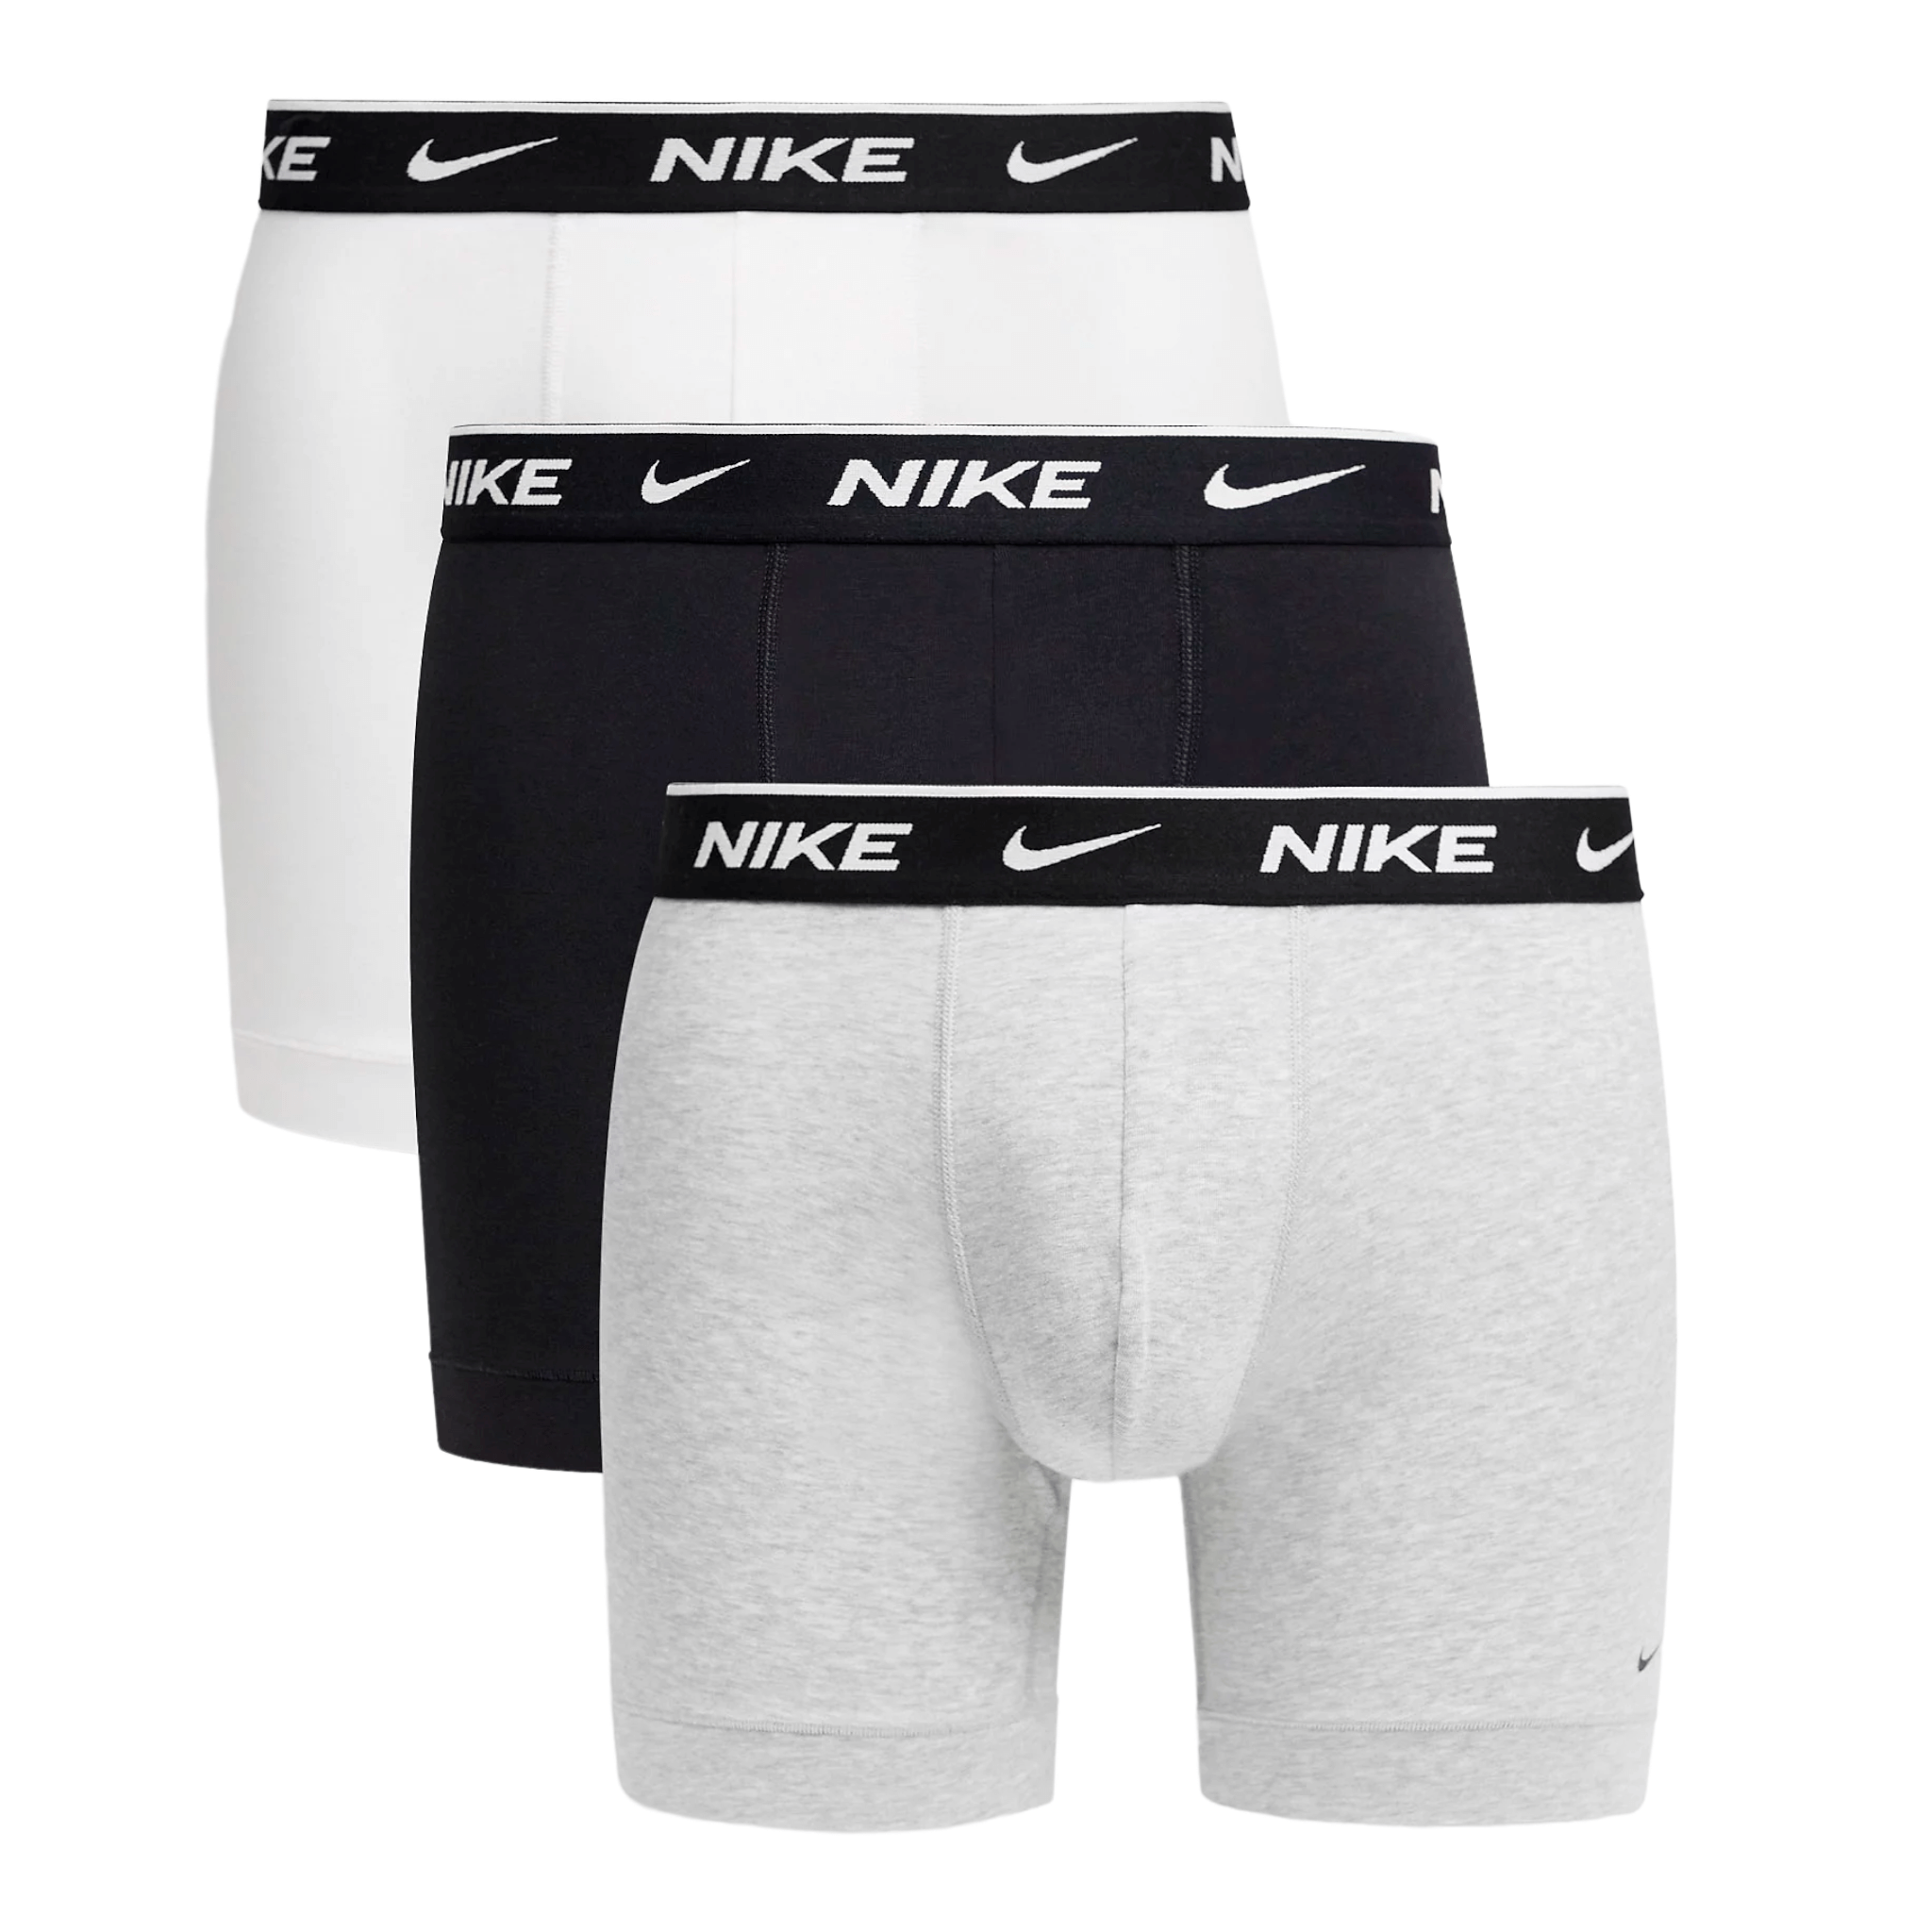 Трусы боксеры Nike Brief 3 Pack, 3 предмета, белый/черный/серый nike сумка на пояс nike